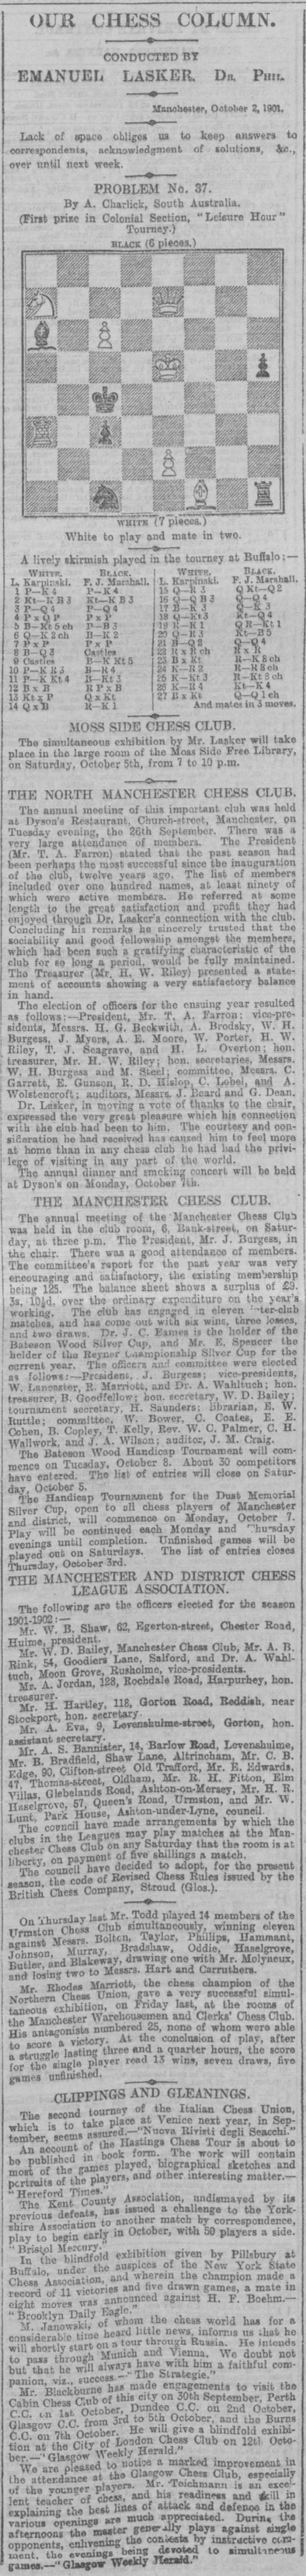 1901.10.02-01 Manchester Evening News.jpg